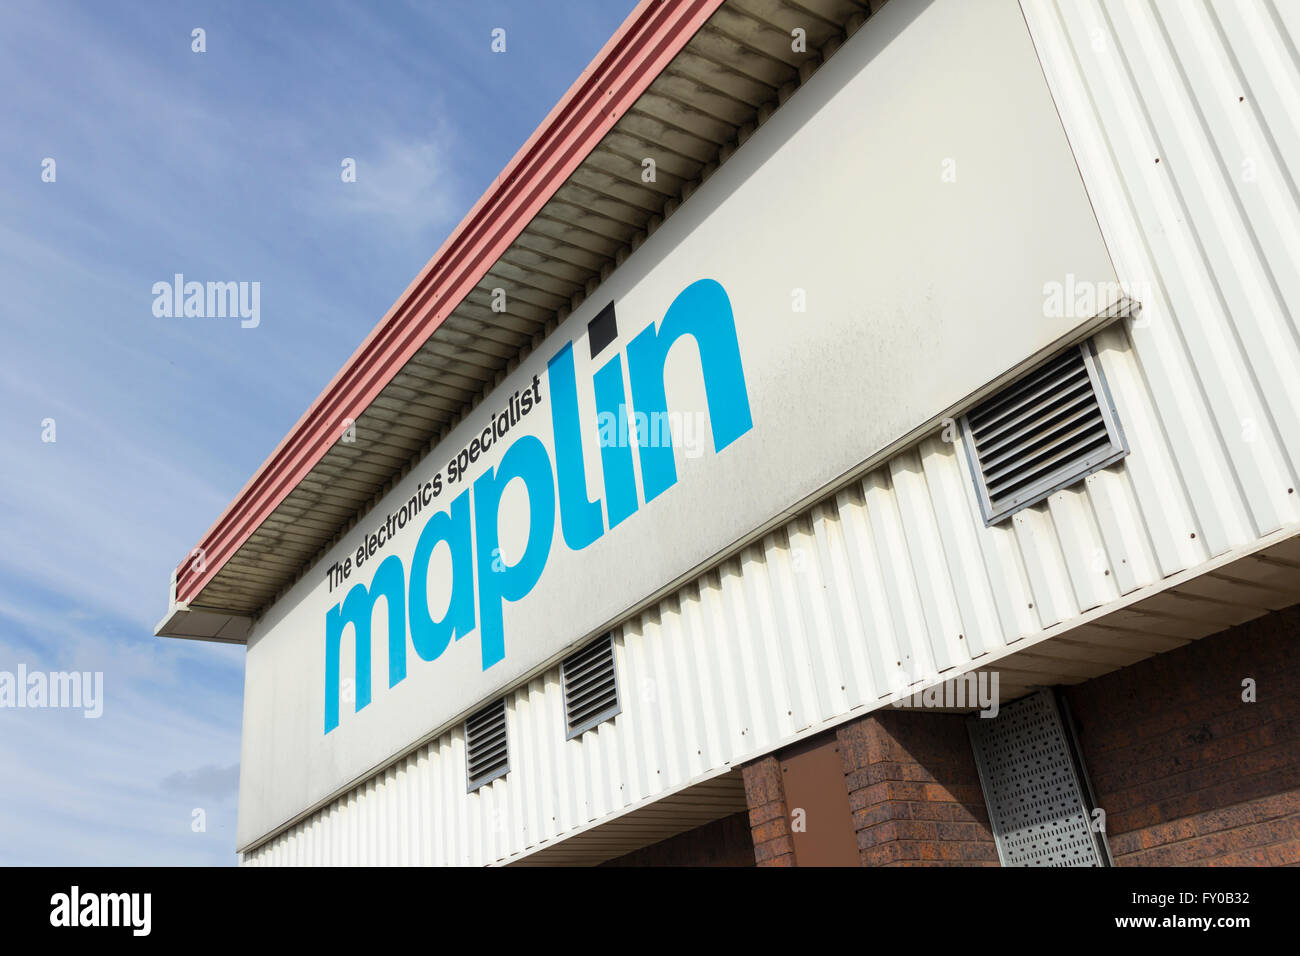 Melden Sie sich an der Außenseite des Maplin Shop, Manchester Road, Bolton. Maplin sind ein Elektronik-Händler. Stockfoto